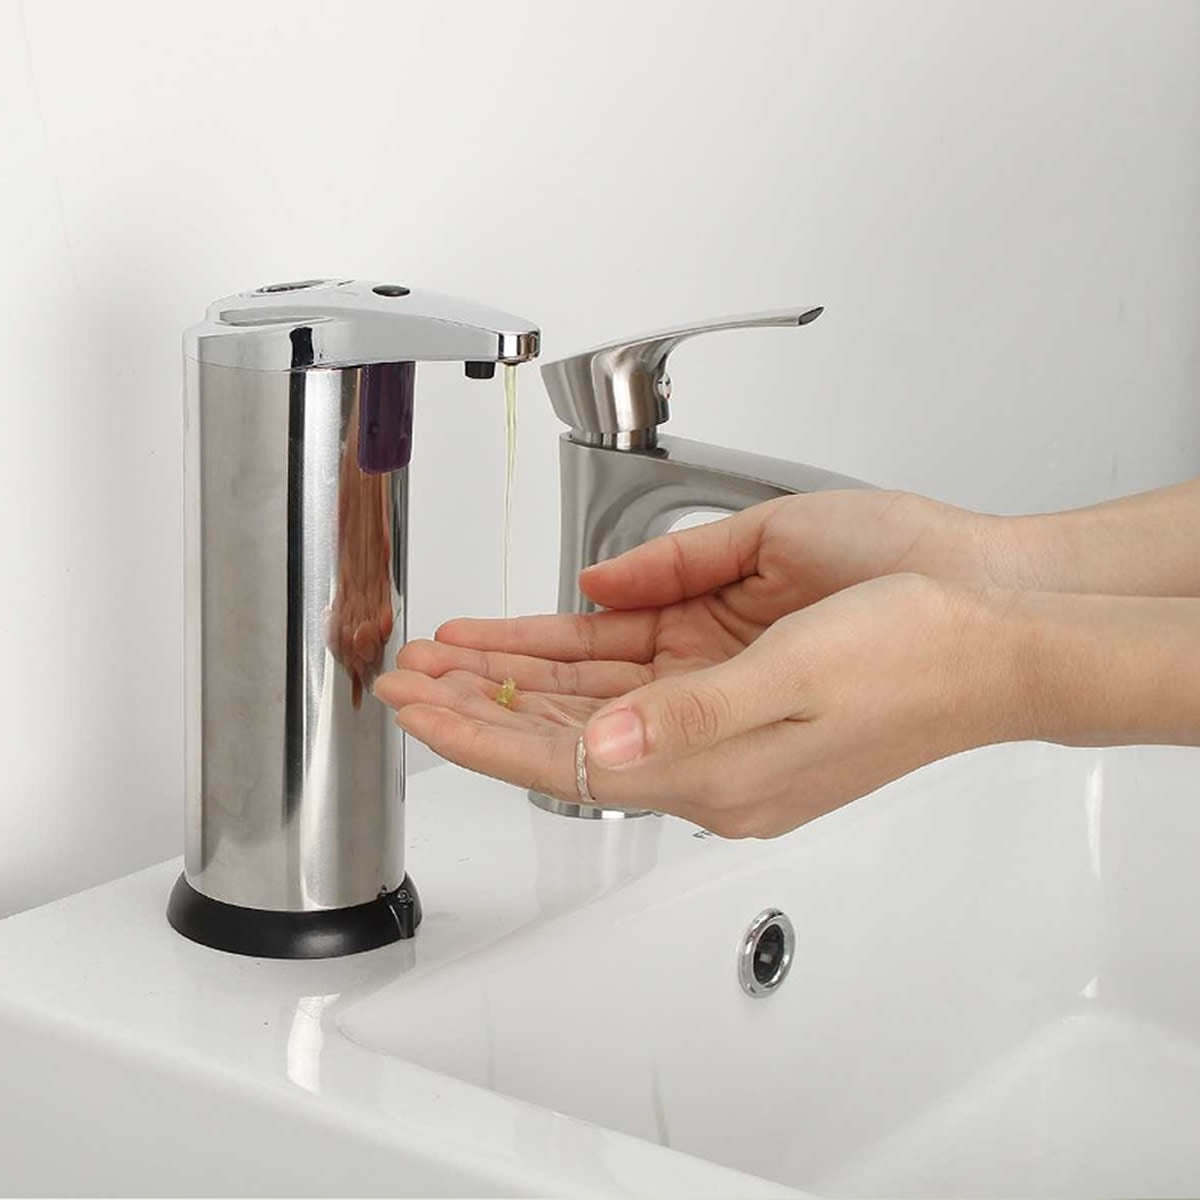 Auto Motion Smart Soap Dispenser